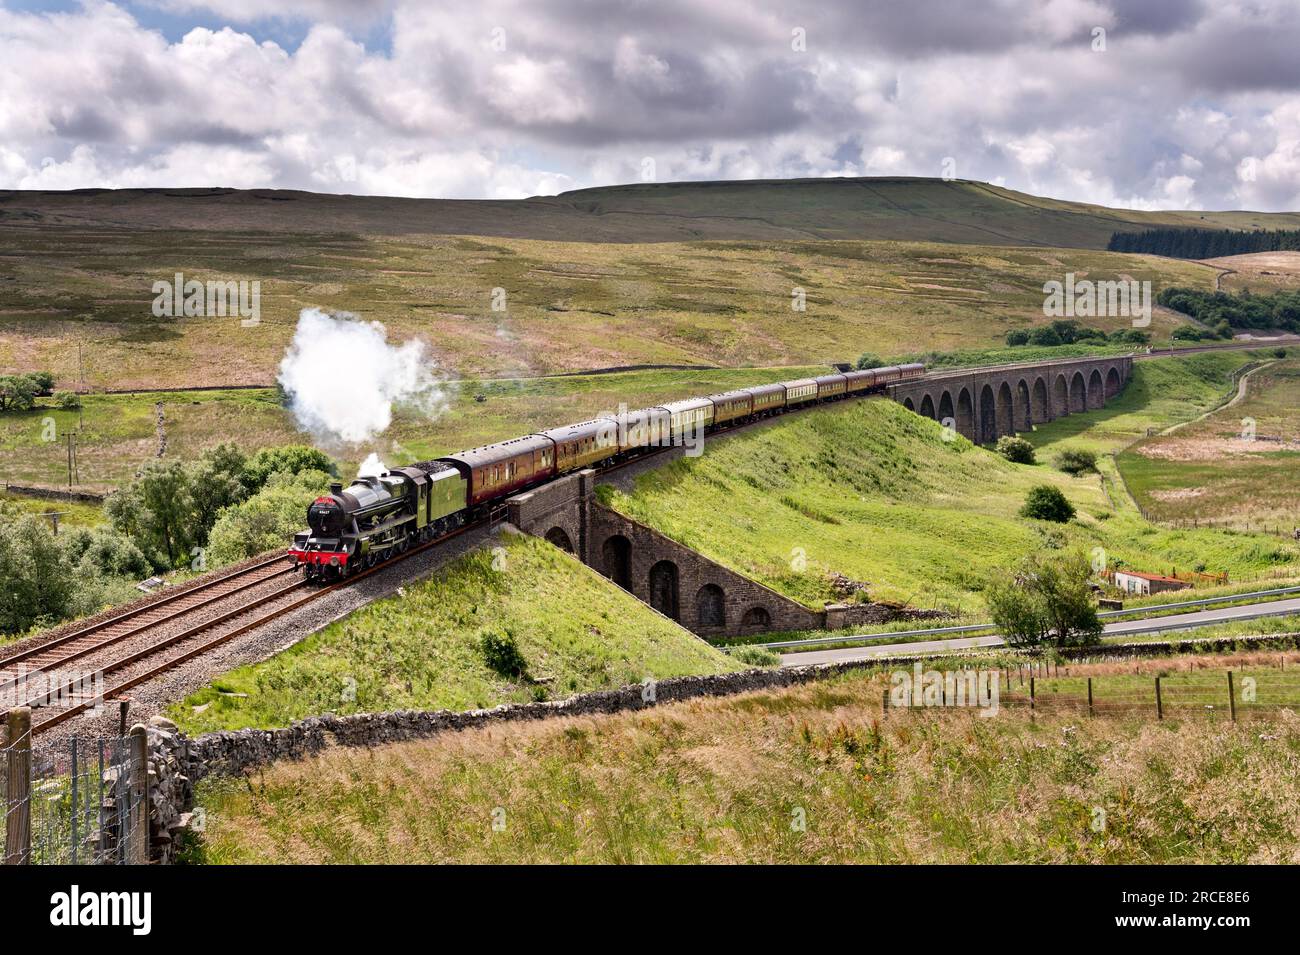 La vapeur spéciale 'The Dalesman' traverse le viaduc de Dandrymire, Garsdale, sur le chemin de fer Settle-Carlisle, en route pour Carlisle. Banque D'Images